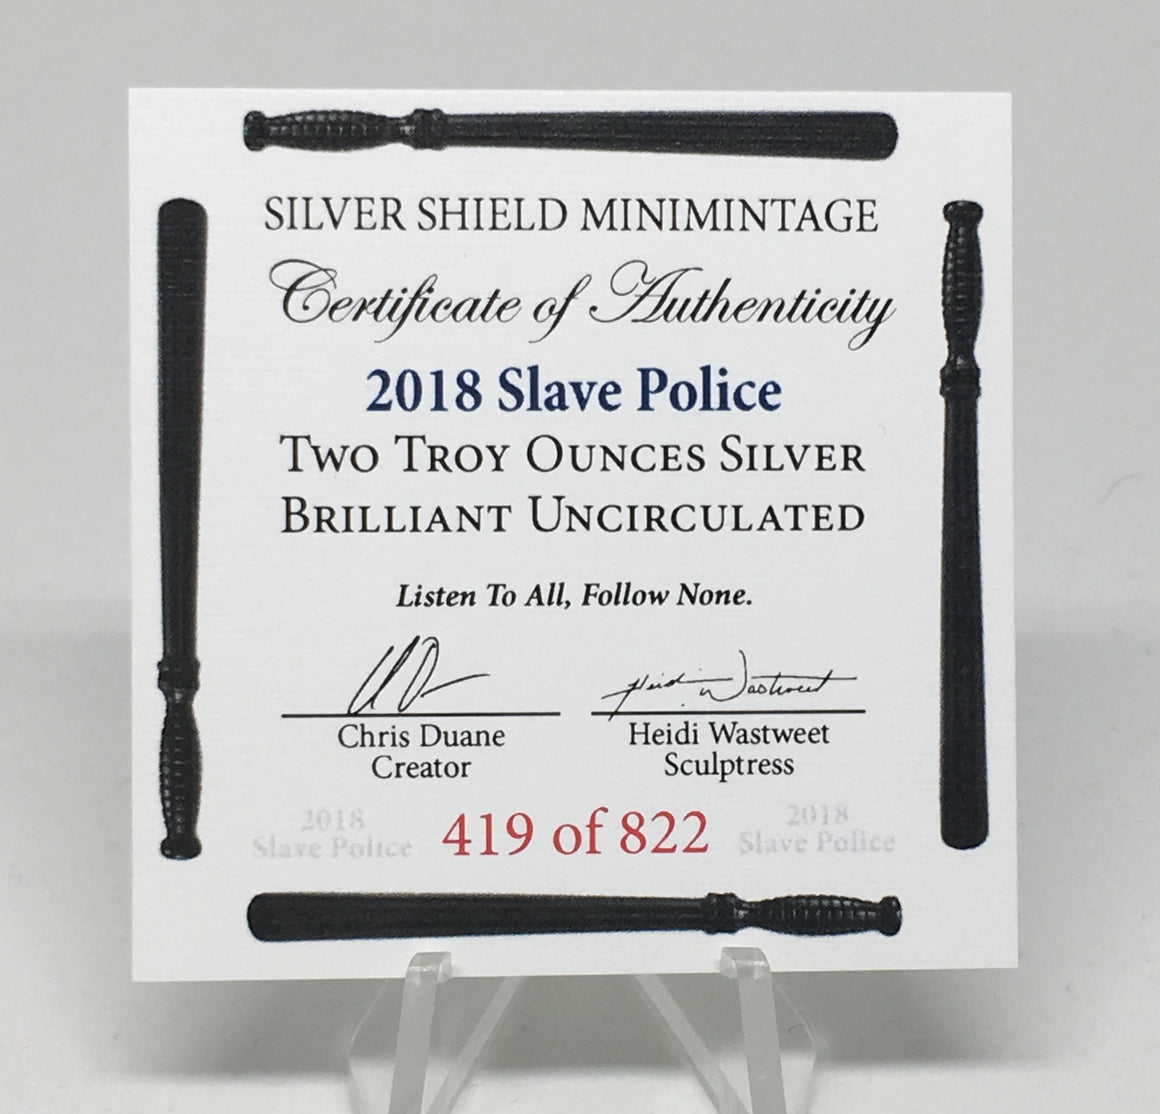 2018 Slave Police by Silver Shield, Mini Mintage - BU 2 oz .999 Silver Round